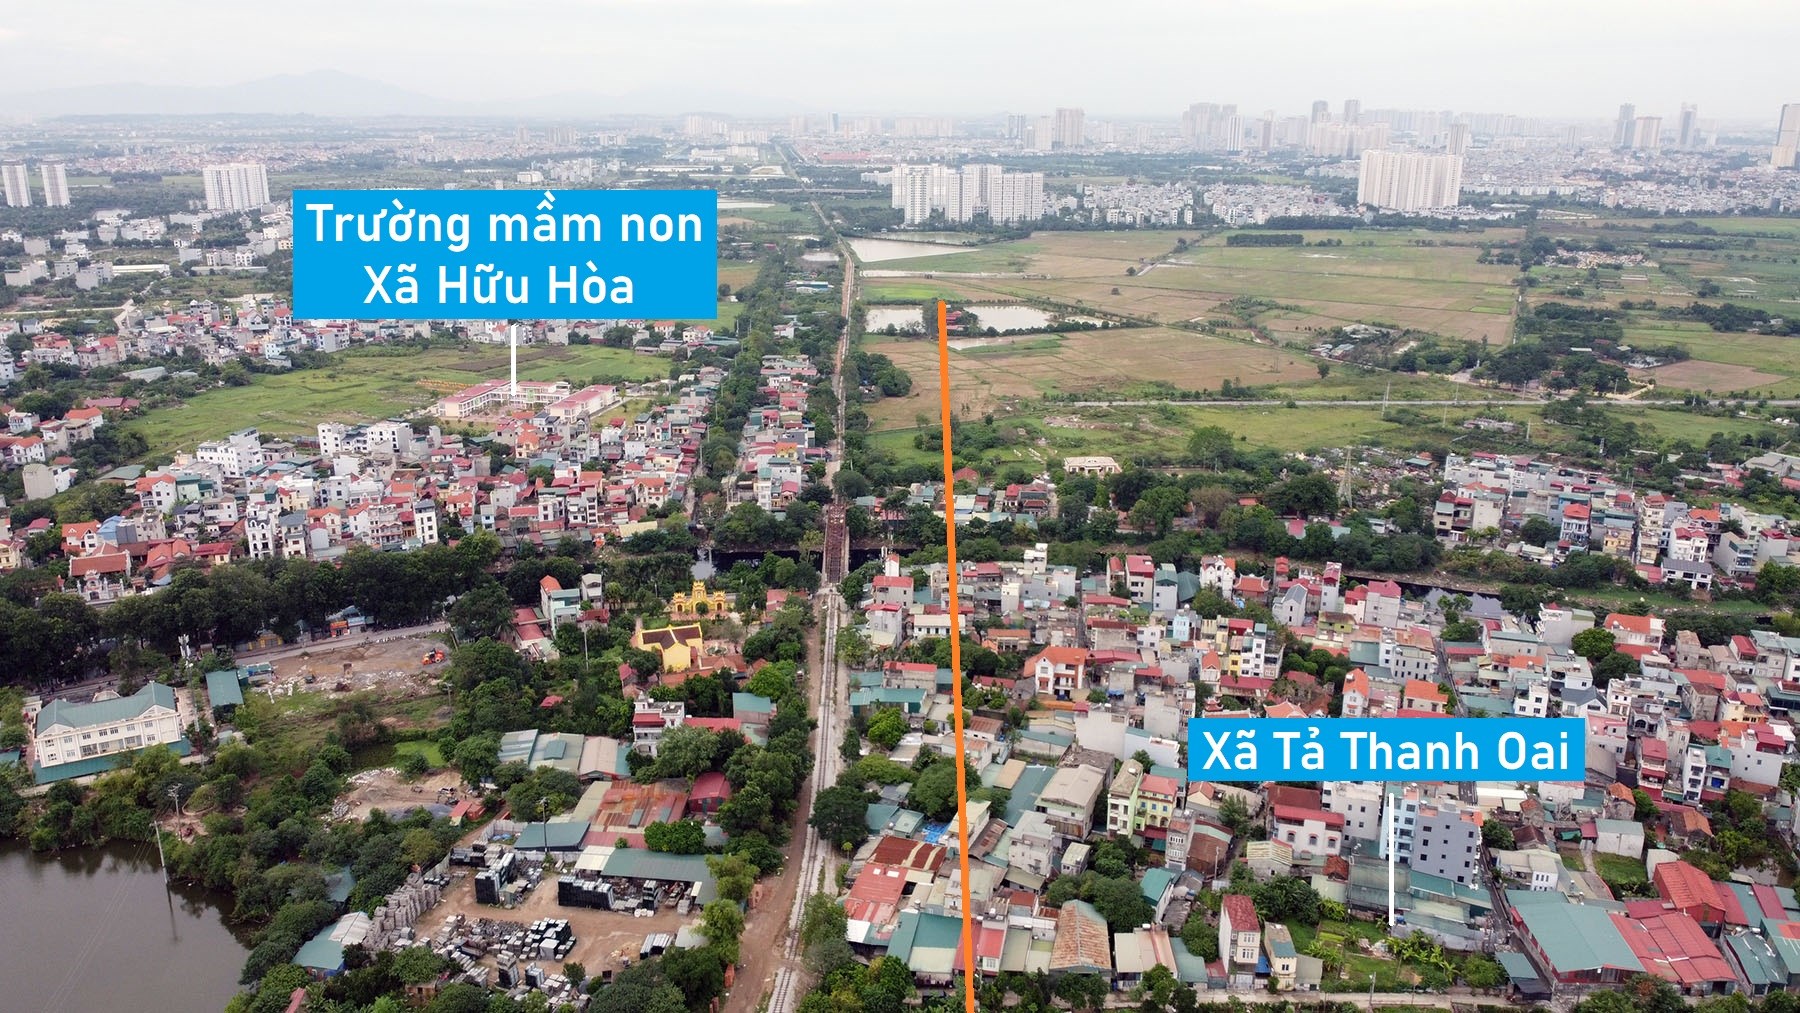 Toàn cảnh vị trí quy hoạch cầu vượt sông Nhuệ trên vành đai 3,5 qua huyện Thanh Trì, Hà Nội